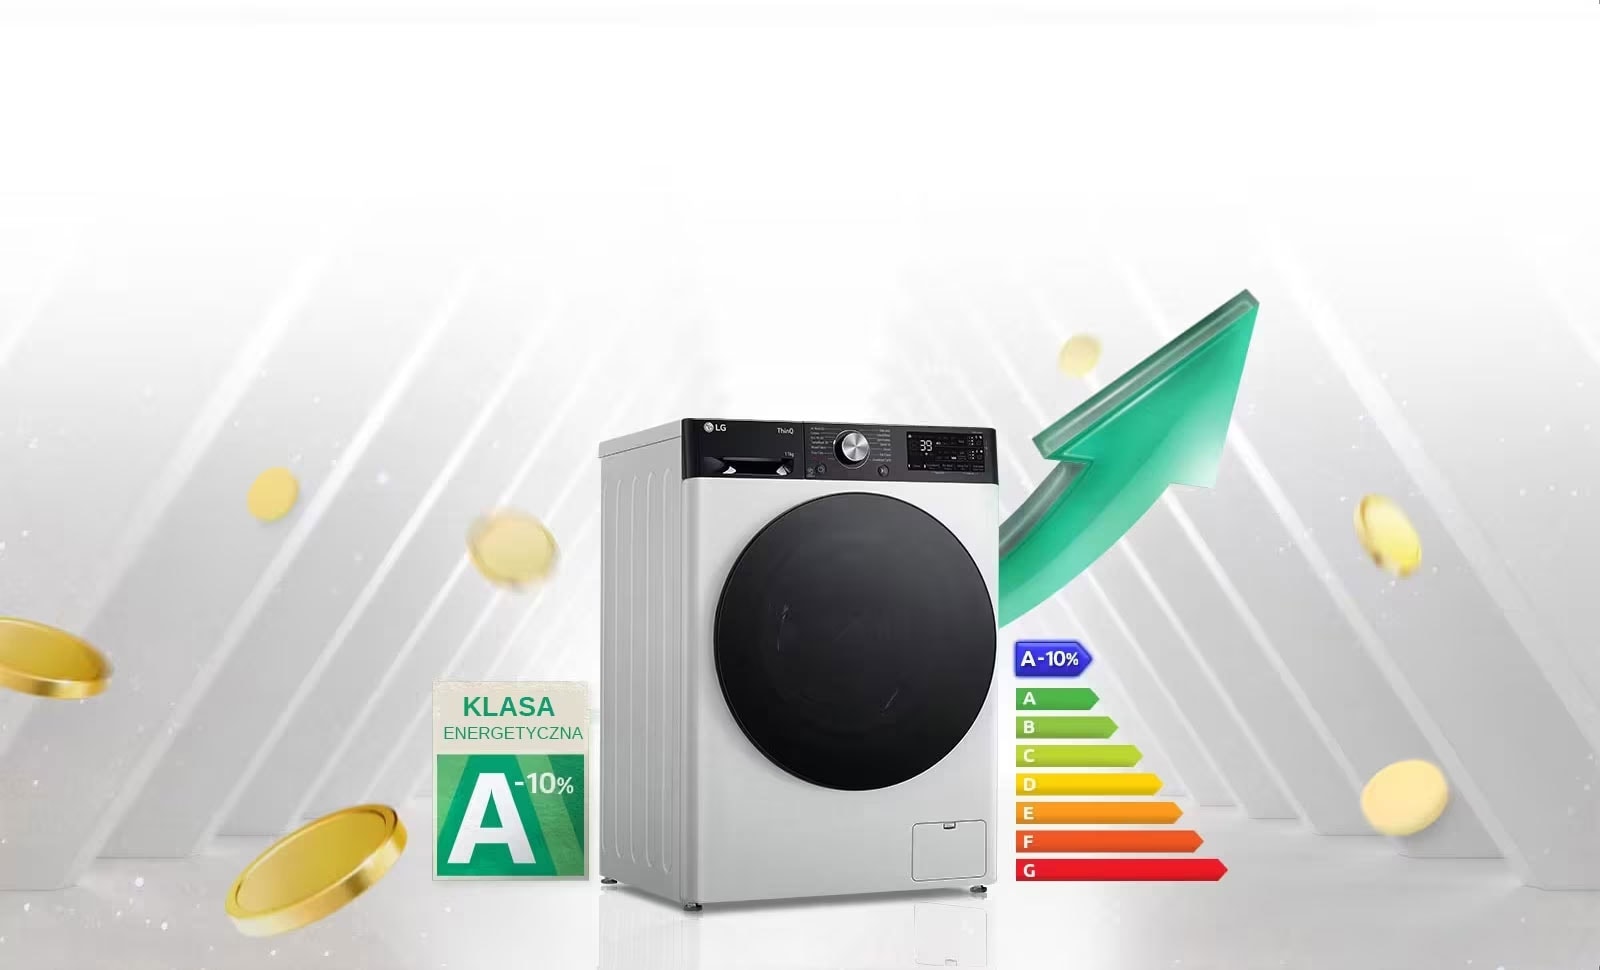 Etykieta energetyczna A-10% jest umieszczona obok pralki. Za pralką pojawia się zielona strzałka skierowana w górę.